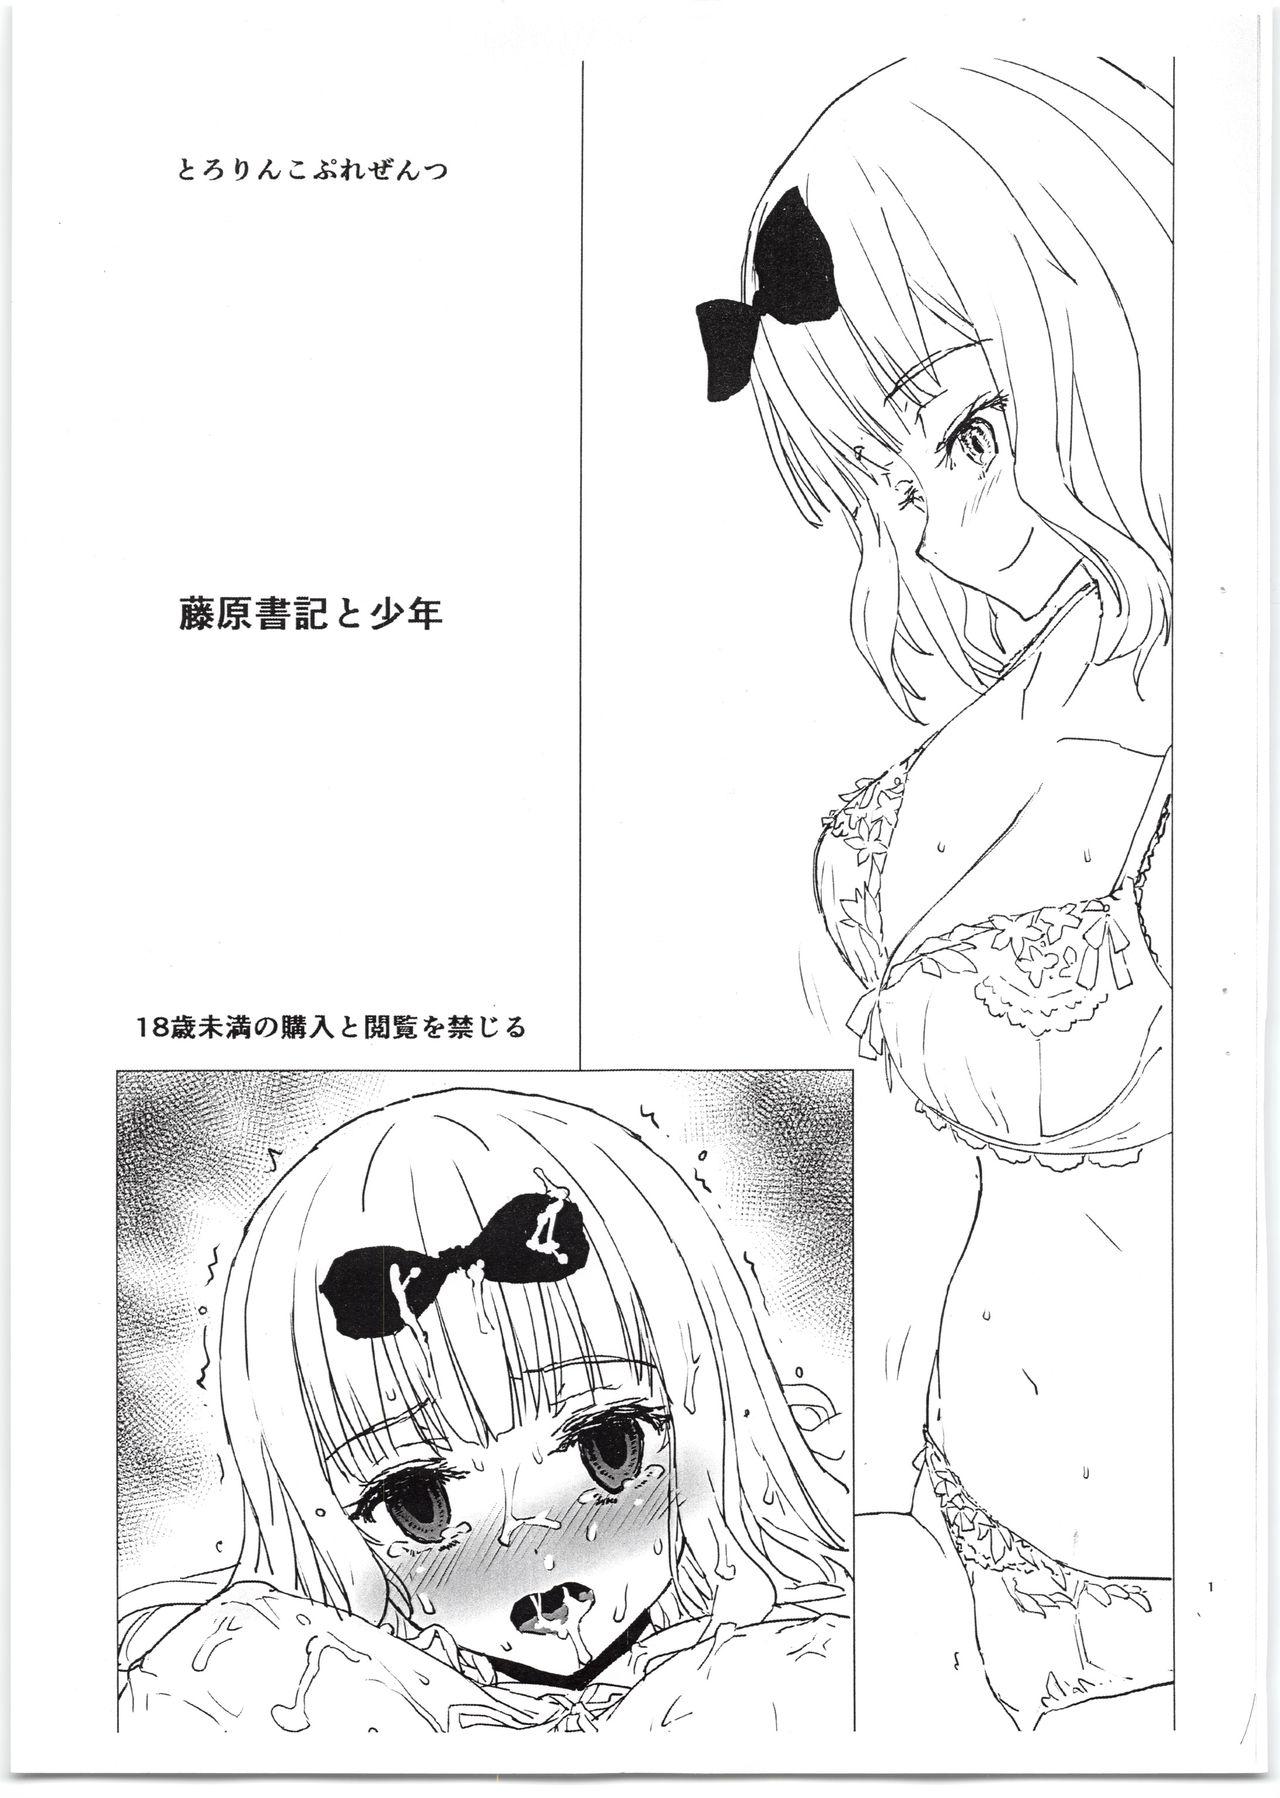 Webcamsex Fujiwara-shoki to Shounen - Kaguya-sama wa kokurasetai Nudity - Page 1